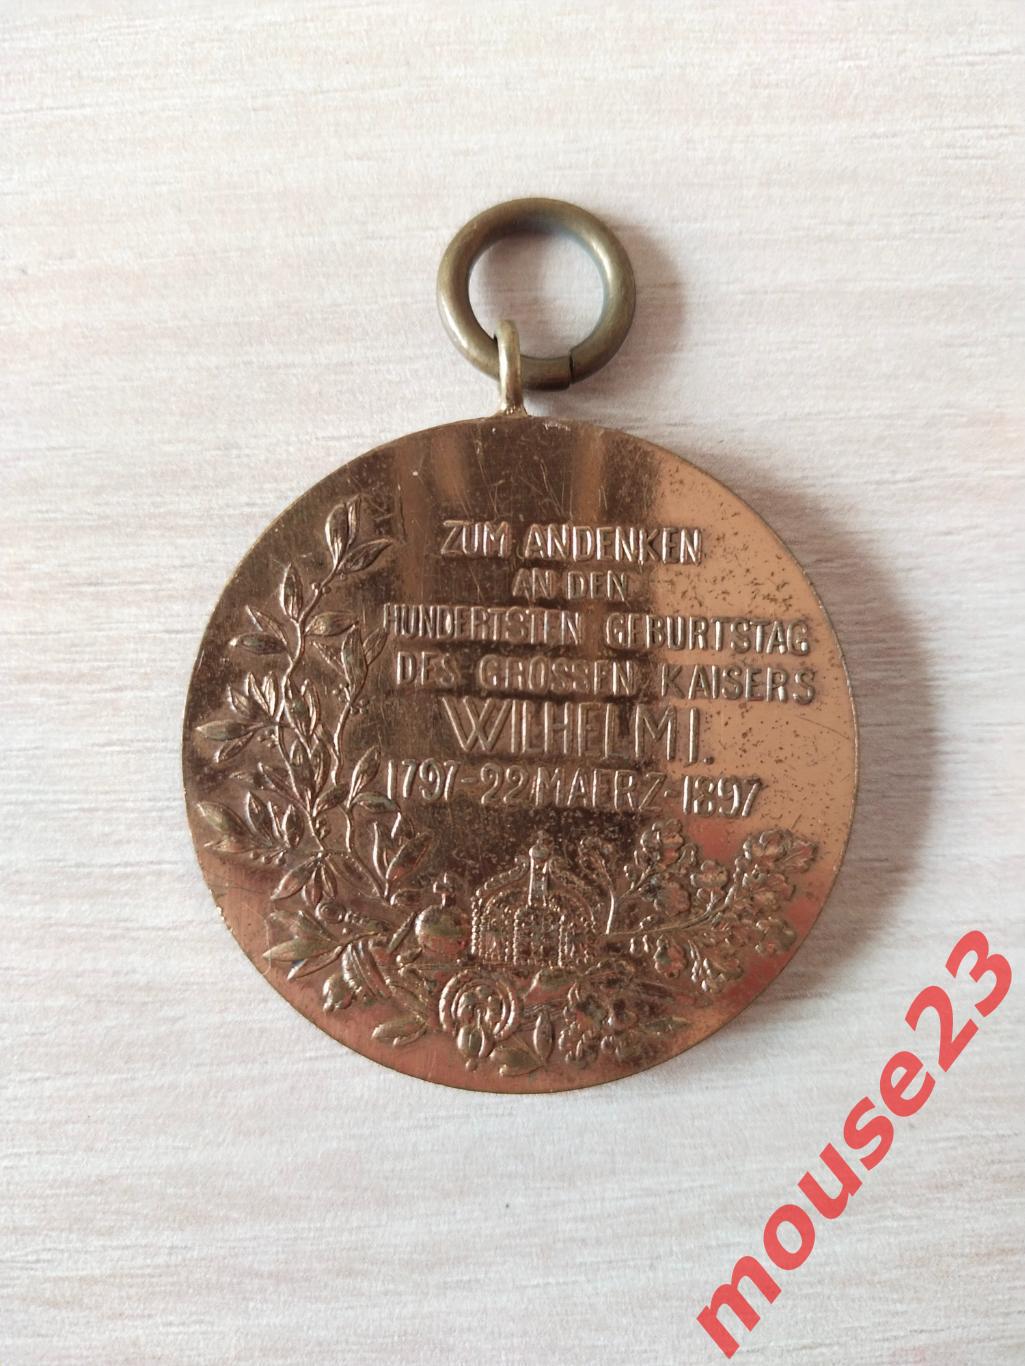 Германия (Пруссия), медаль 100 лет Вильгельму I 1897 г. (без ленты) 1